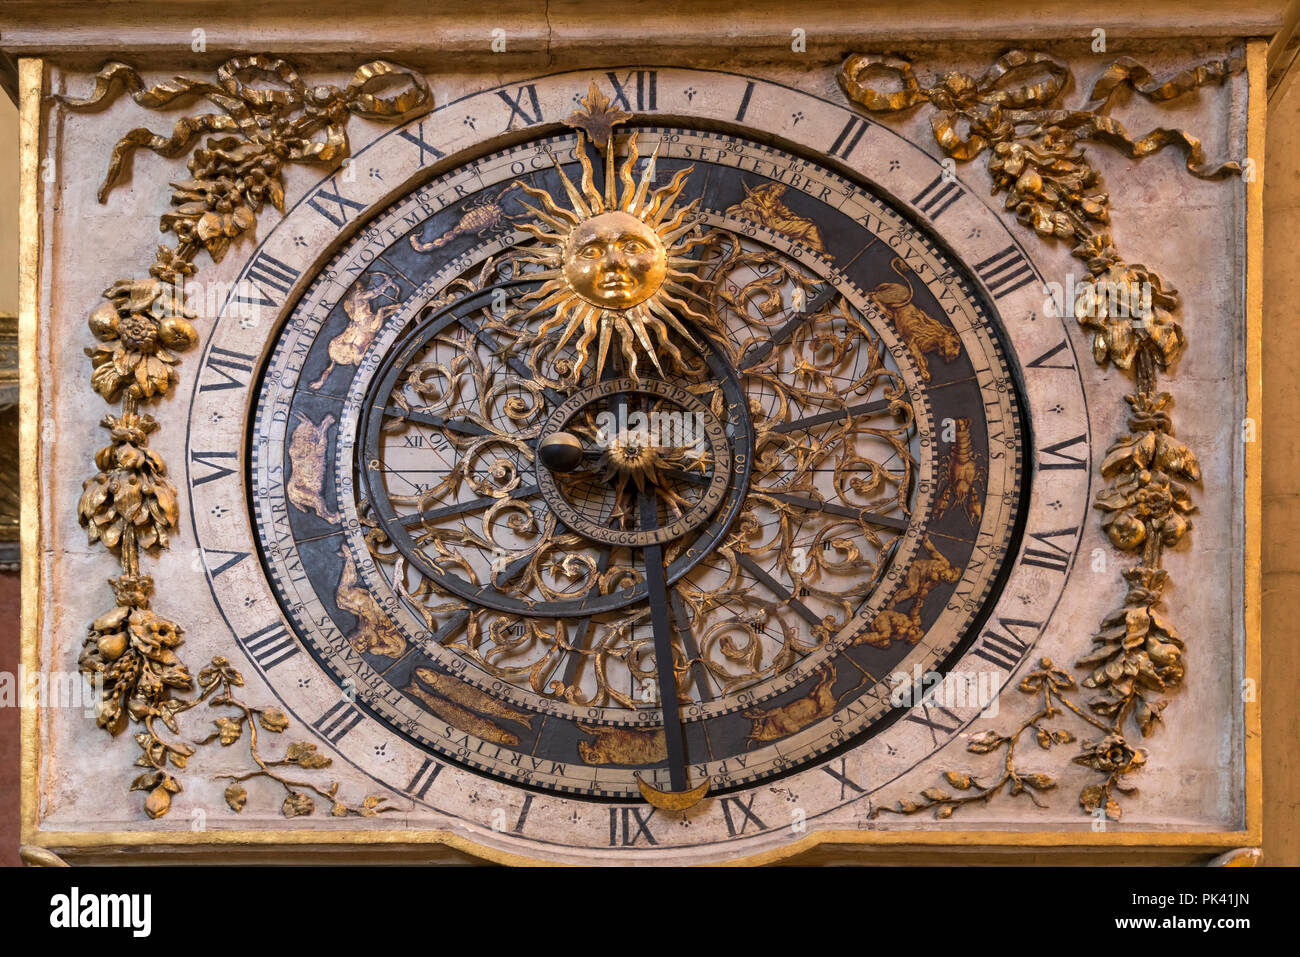 Astronomische Uhr in der Kathedrale von Lyon, Auvergne-Rhone-Alpes, Frankreich | astronomische Uhr, die Kathedrale von Lyon, Lyon, Auvergne-Rhone-Alpes, Fra Stockfoto